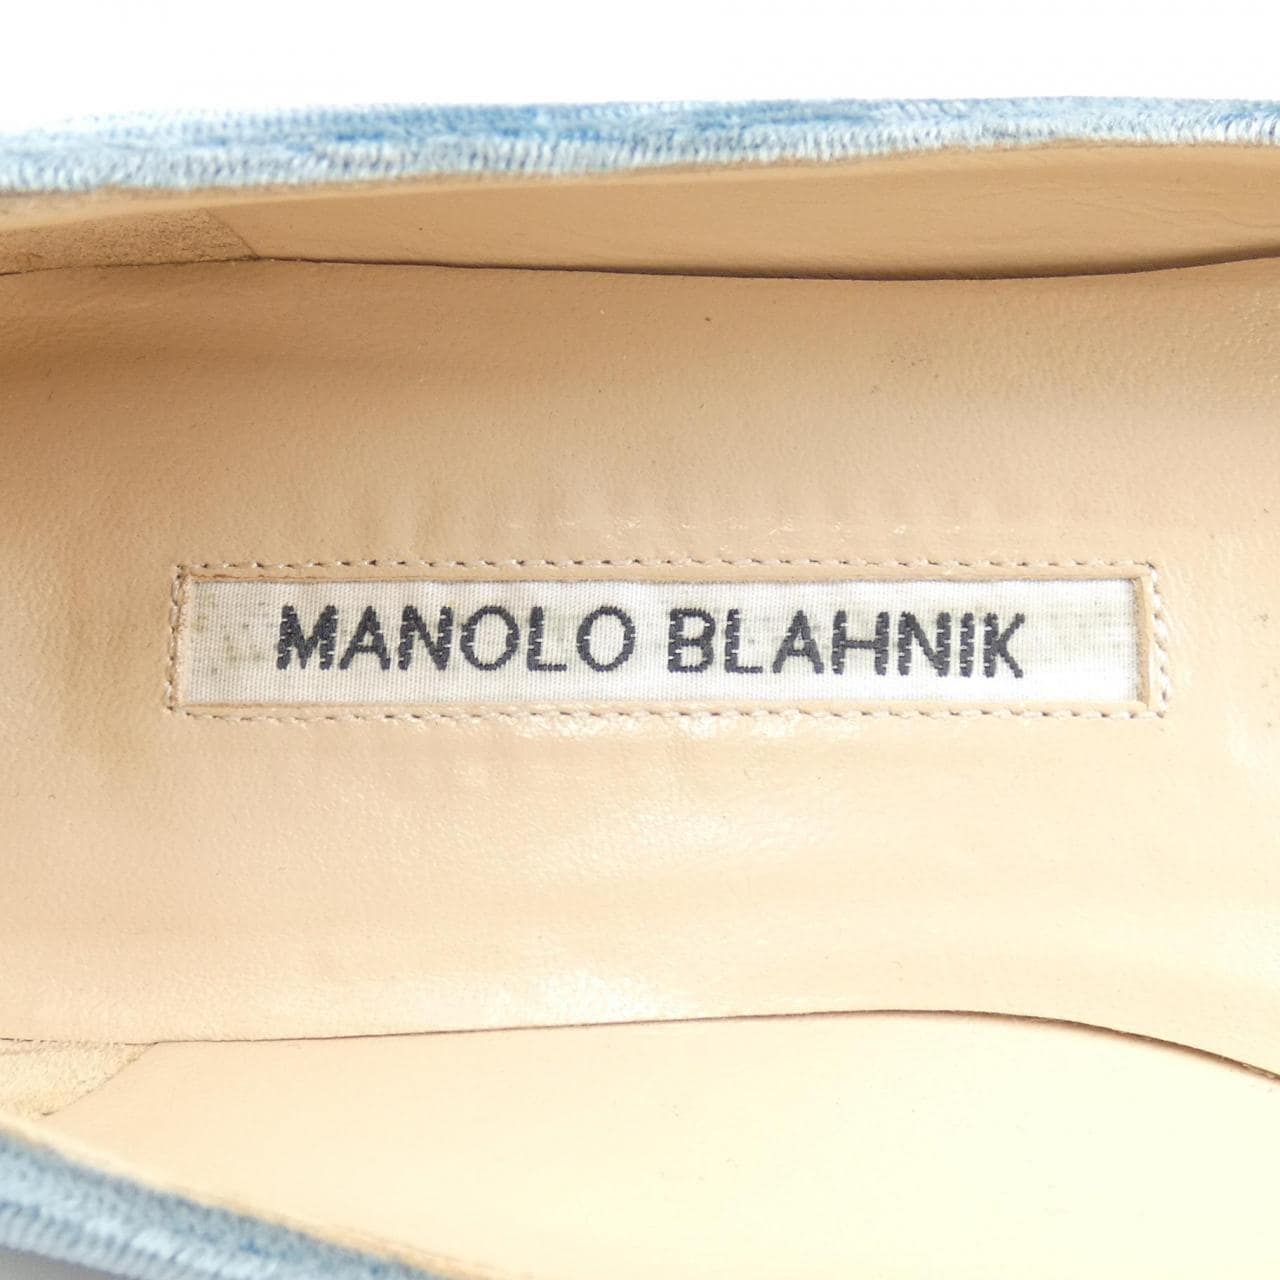 U MANOLO BLAHNIK MANOLO BLAHNIK SHOES